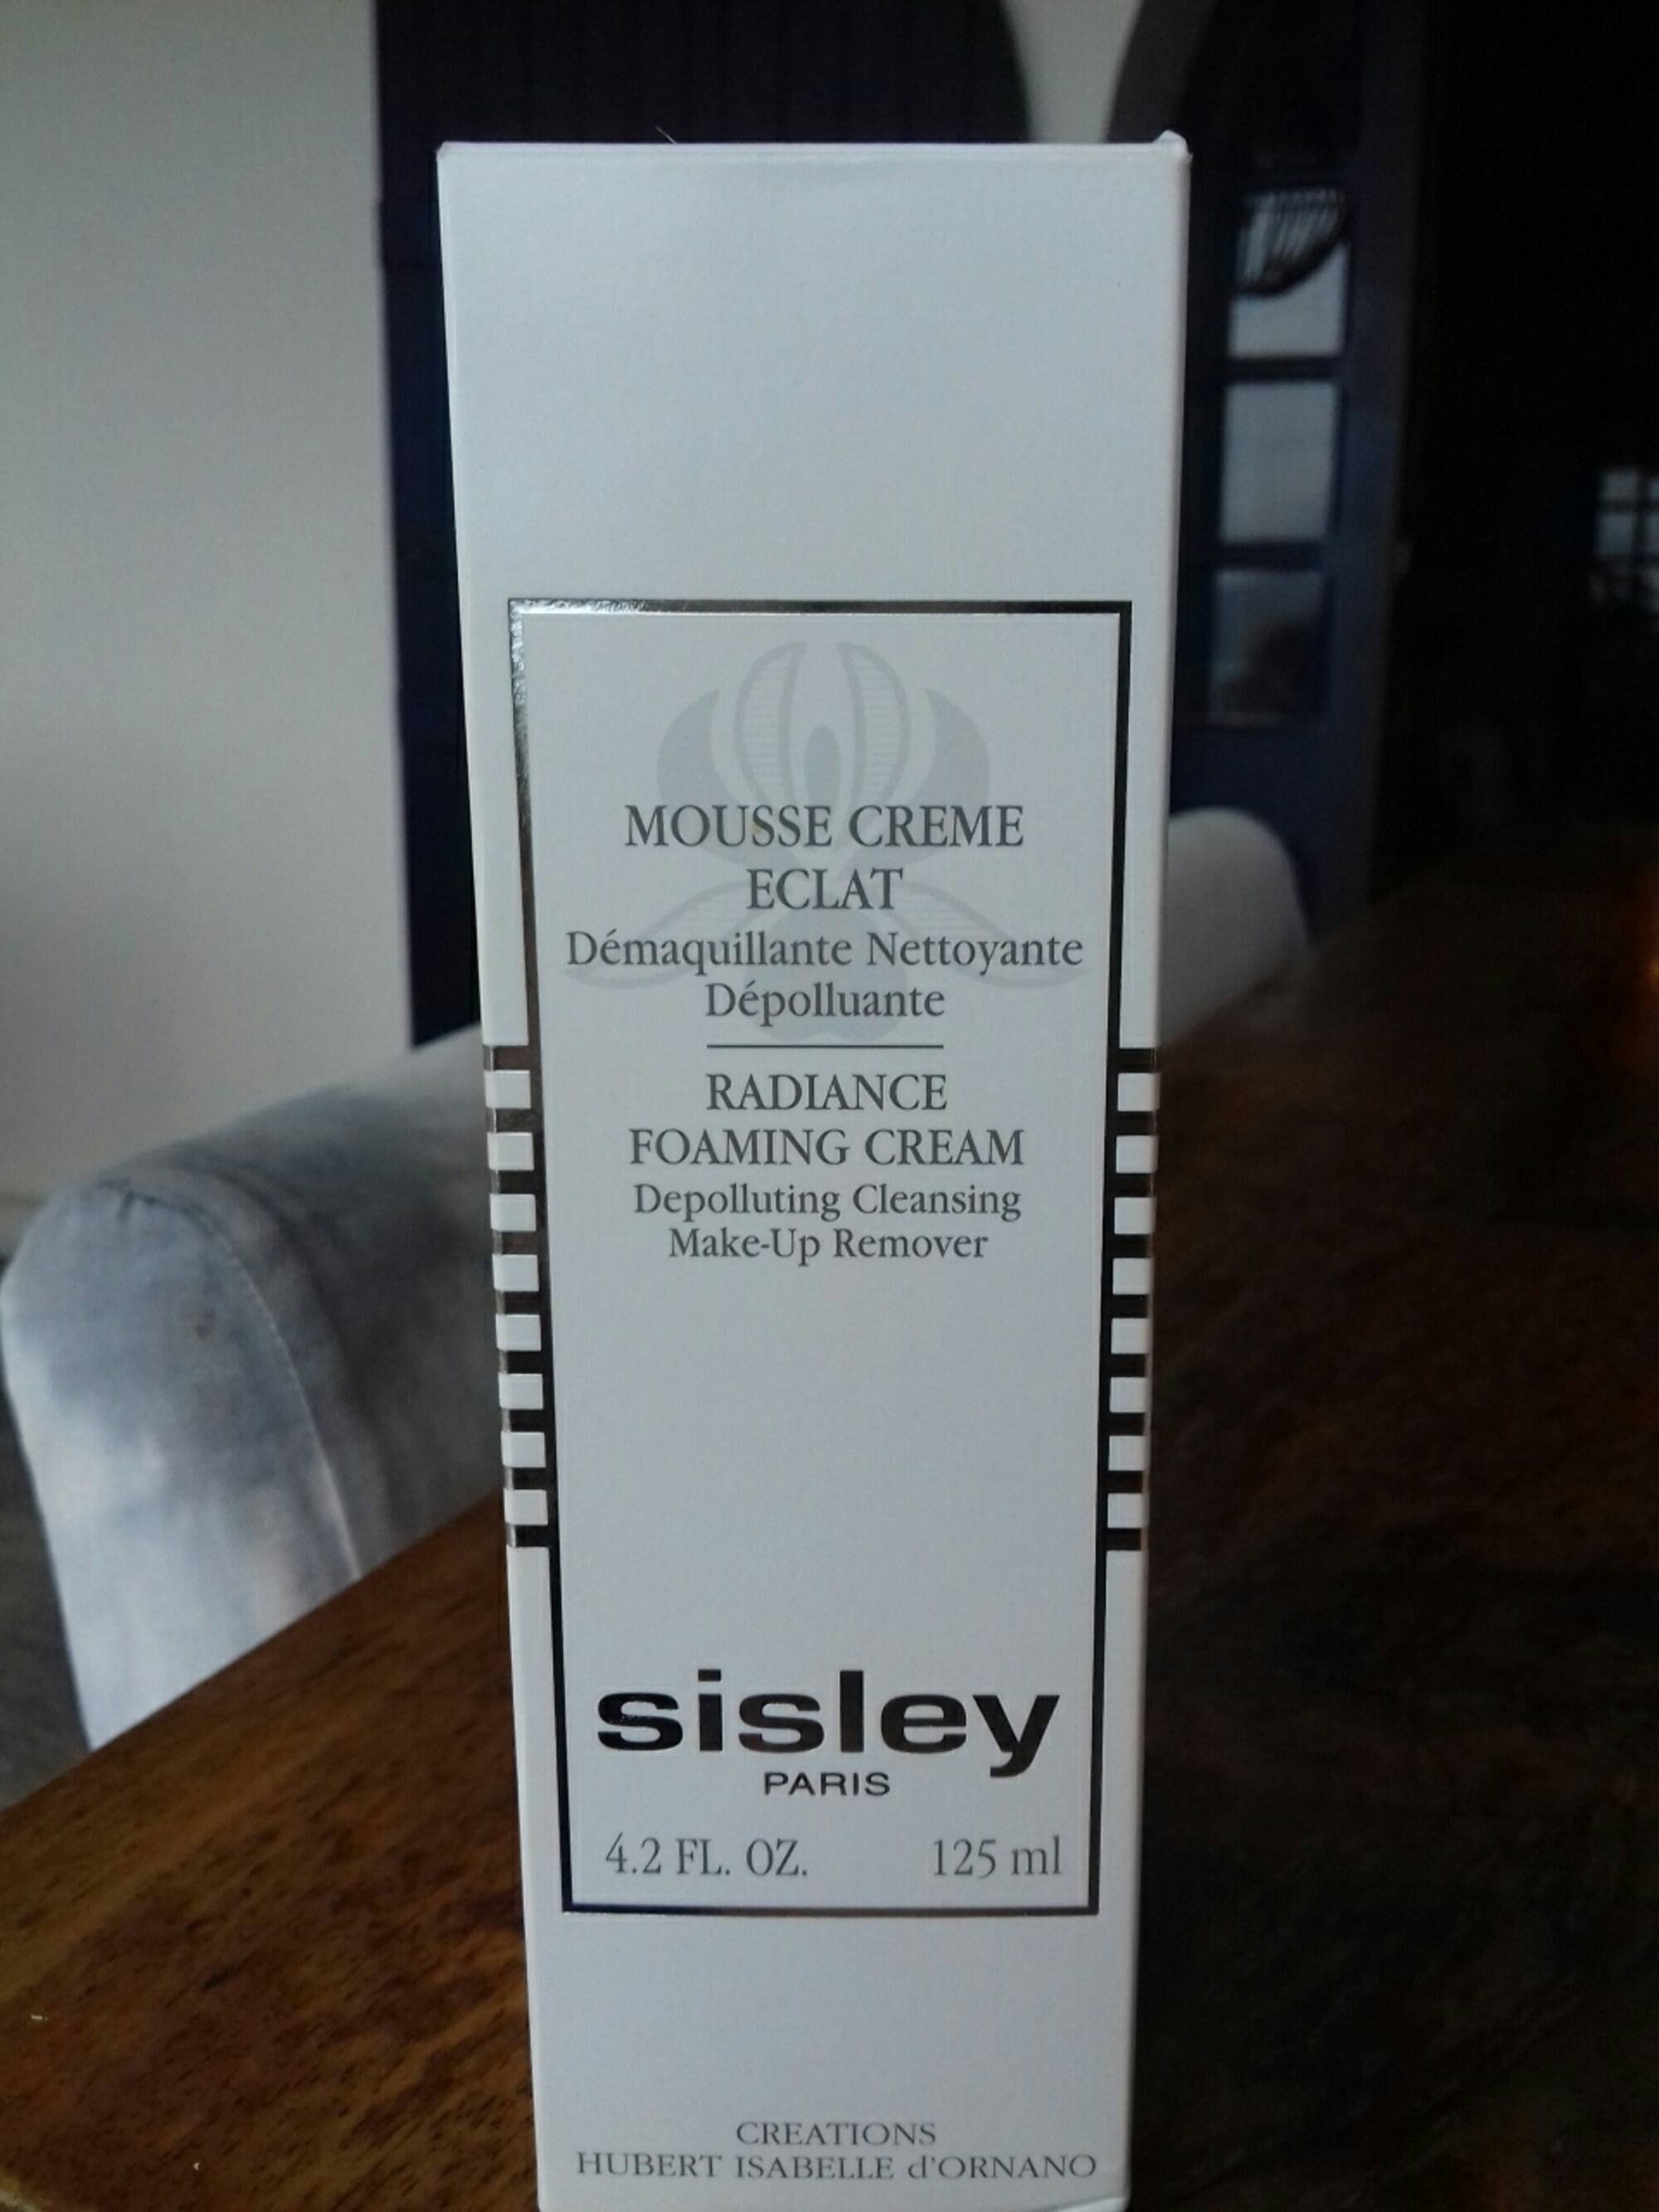 SISLEY - Mousse crème éclat - Démaquillante nettoyante dépolluante